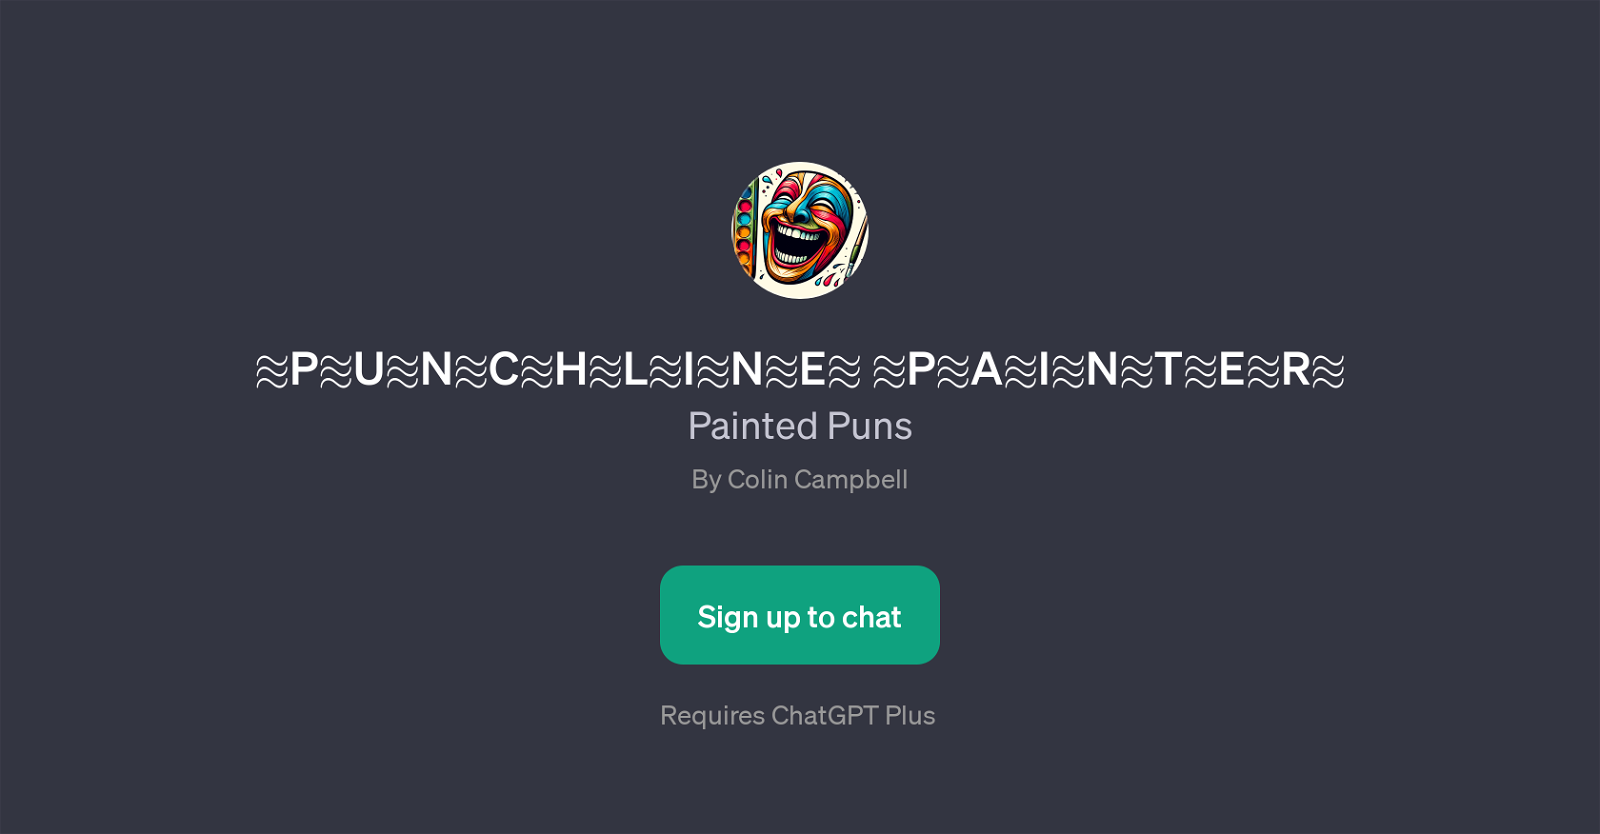 Punchline Painter website